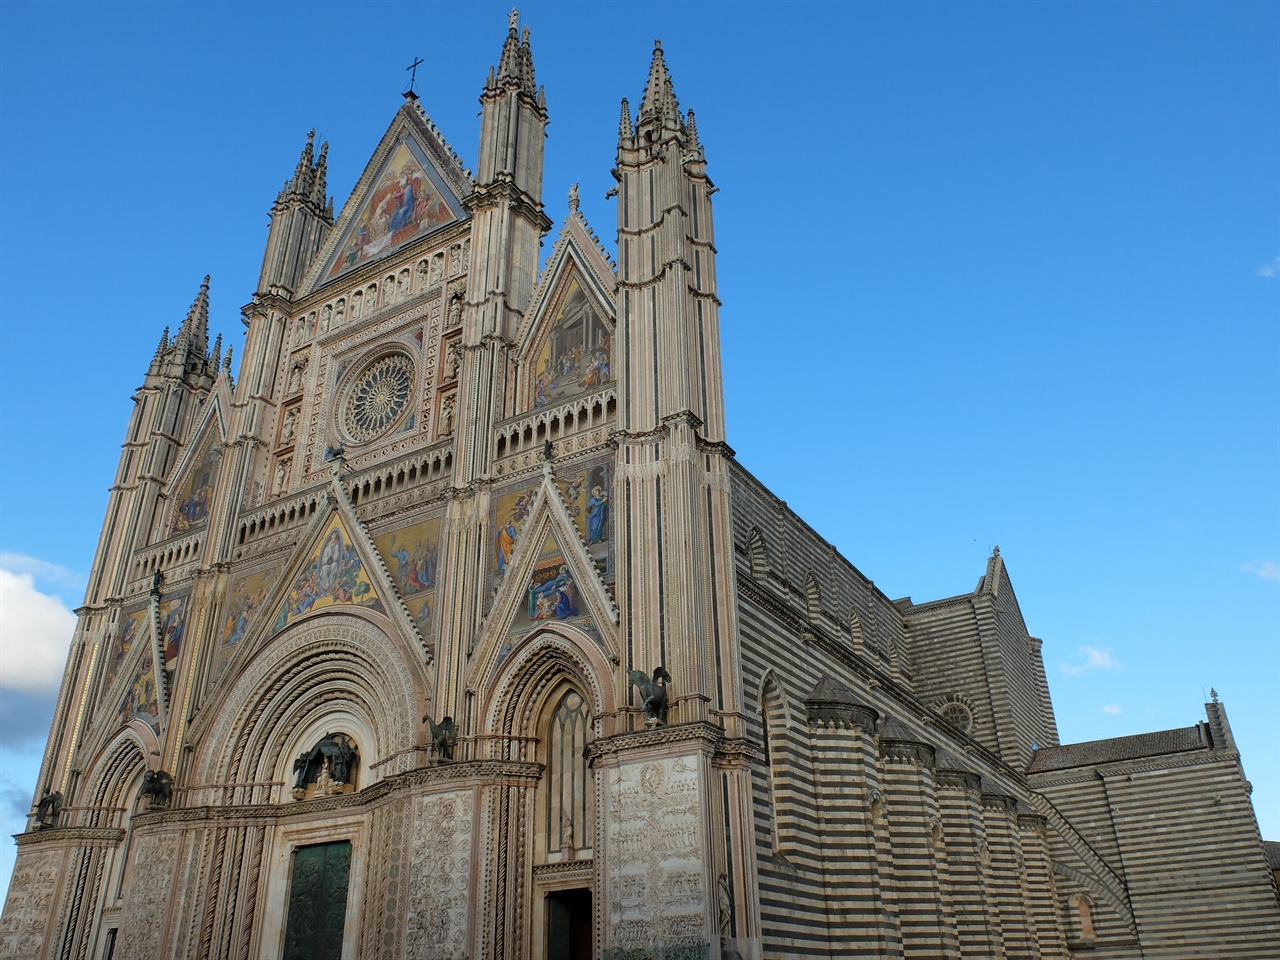 오르비에토의 '두오모(산타 마리아 아순타 대성당 Cattedrale di Santa Maria Assunta)'. 로마네스크 양식의 아랫부분과 고딕양식의 윗부분이 조화를 이루고 있는 거대한 성당입니다. 